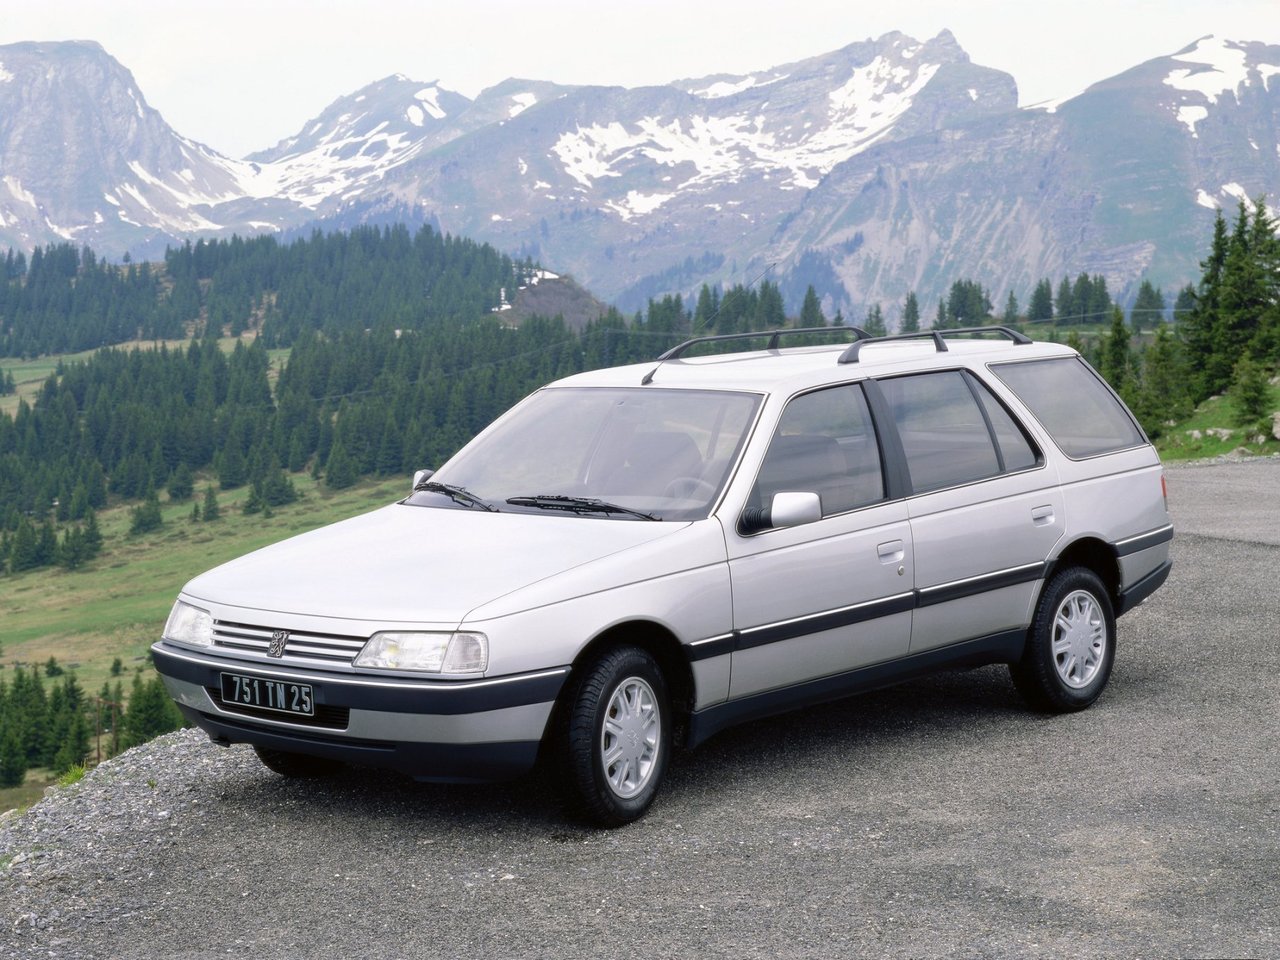 Расход газа трёх комплектаций универсала пять дверей Peugeot 405. Разница стоимости заправки газом и бензином. Автономный пробег до и после установки ГБО.